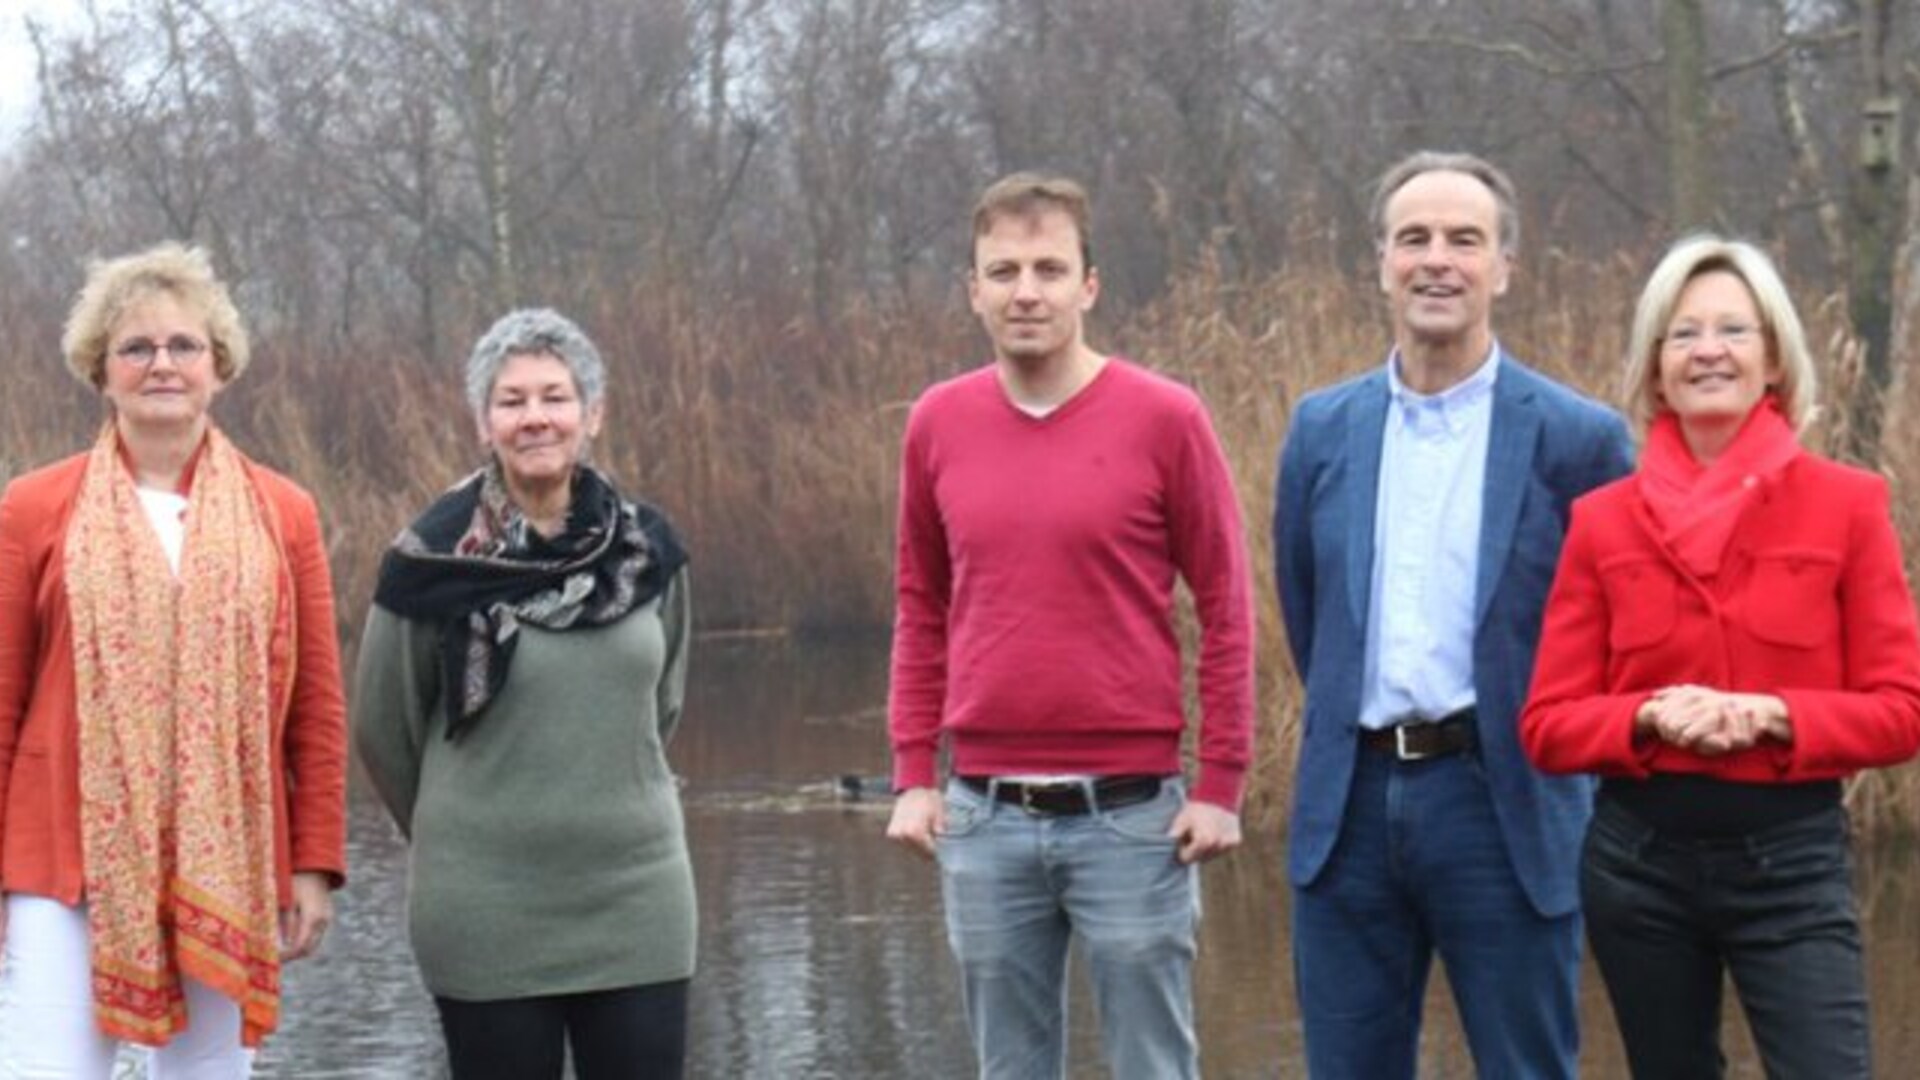 De fractie in Wijdemeren, v.l.n.r. Henrieke Abrahamse (GroenLinks), Claudia Lipschitz (GroenLinks), David Stoll (PvdA), Stan Poels (GroenLinks) en Wilna Wind (PvdA).